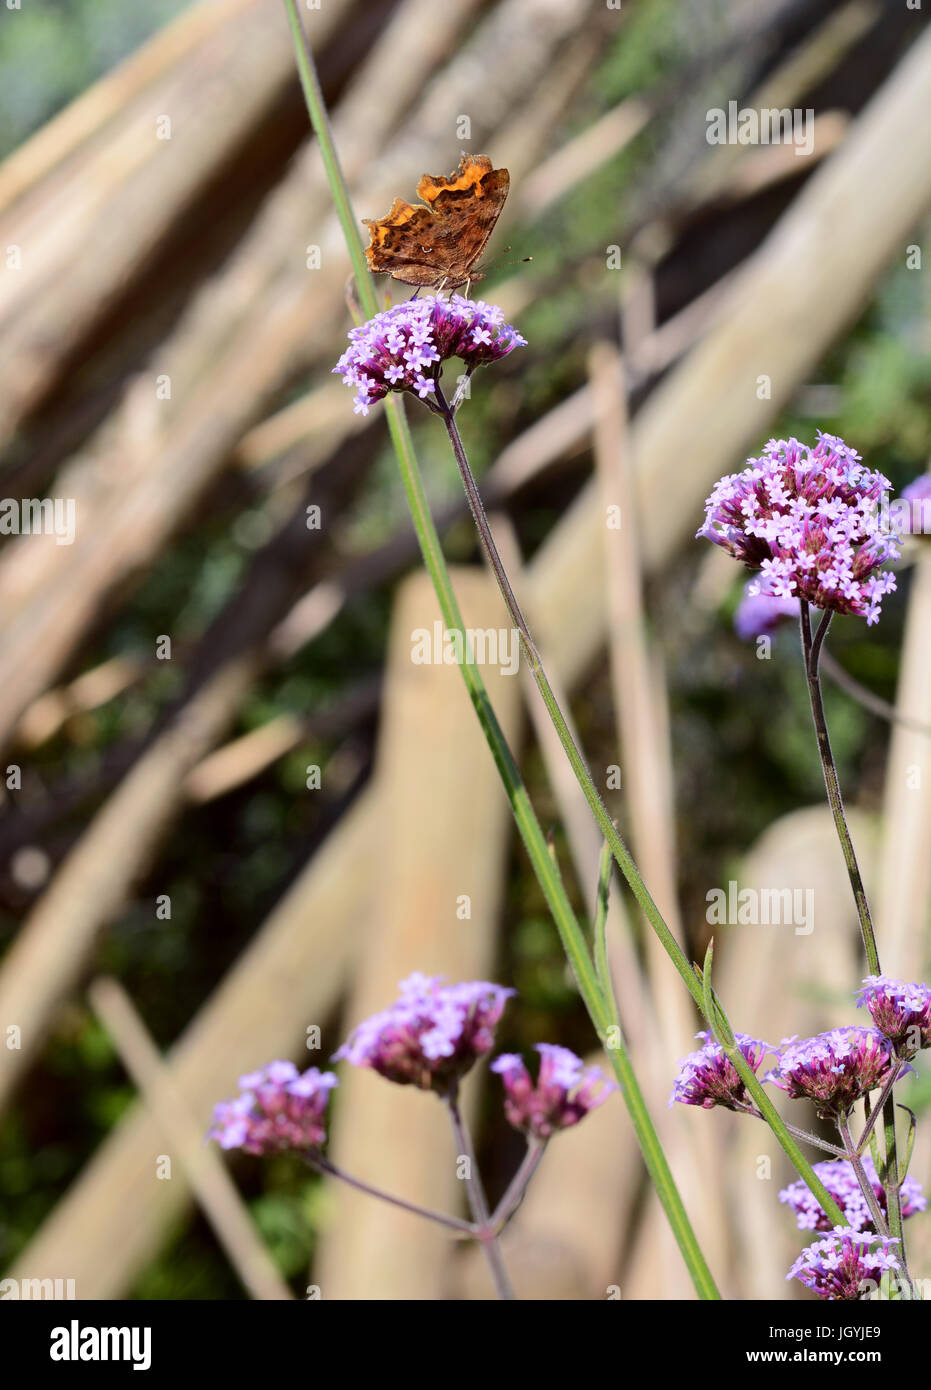 Virgule est papillon avec ailes fermées sur la verveine violette fleurs. L'identification de marque blanche en dessous de l'aile est bien visible Banque D'Images